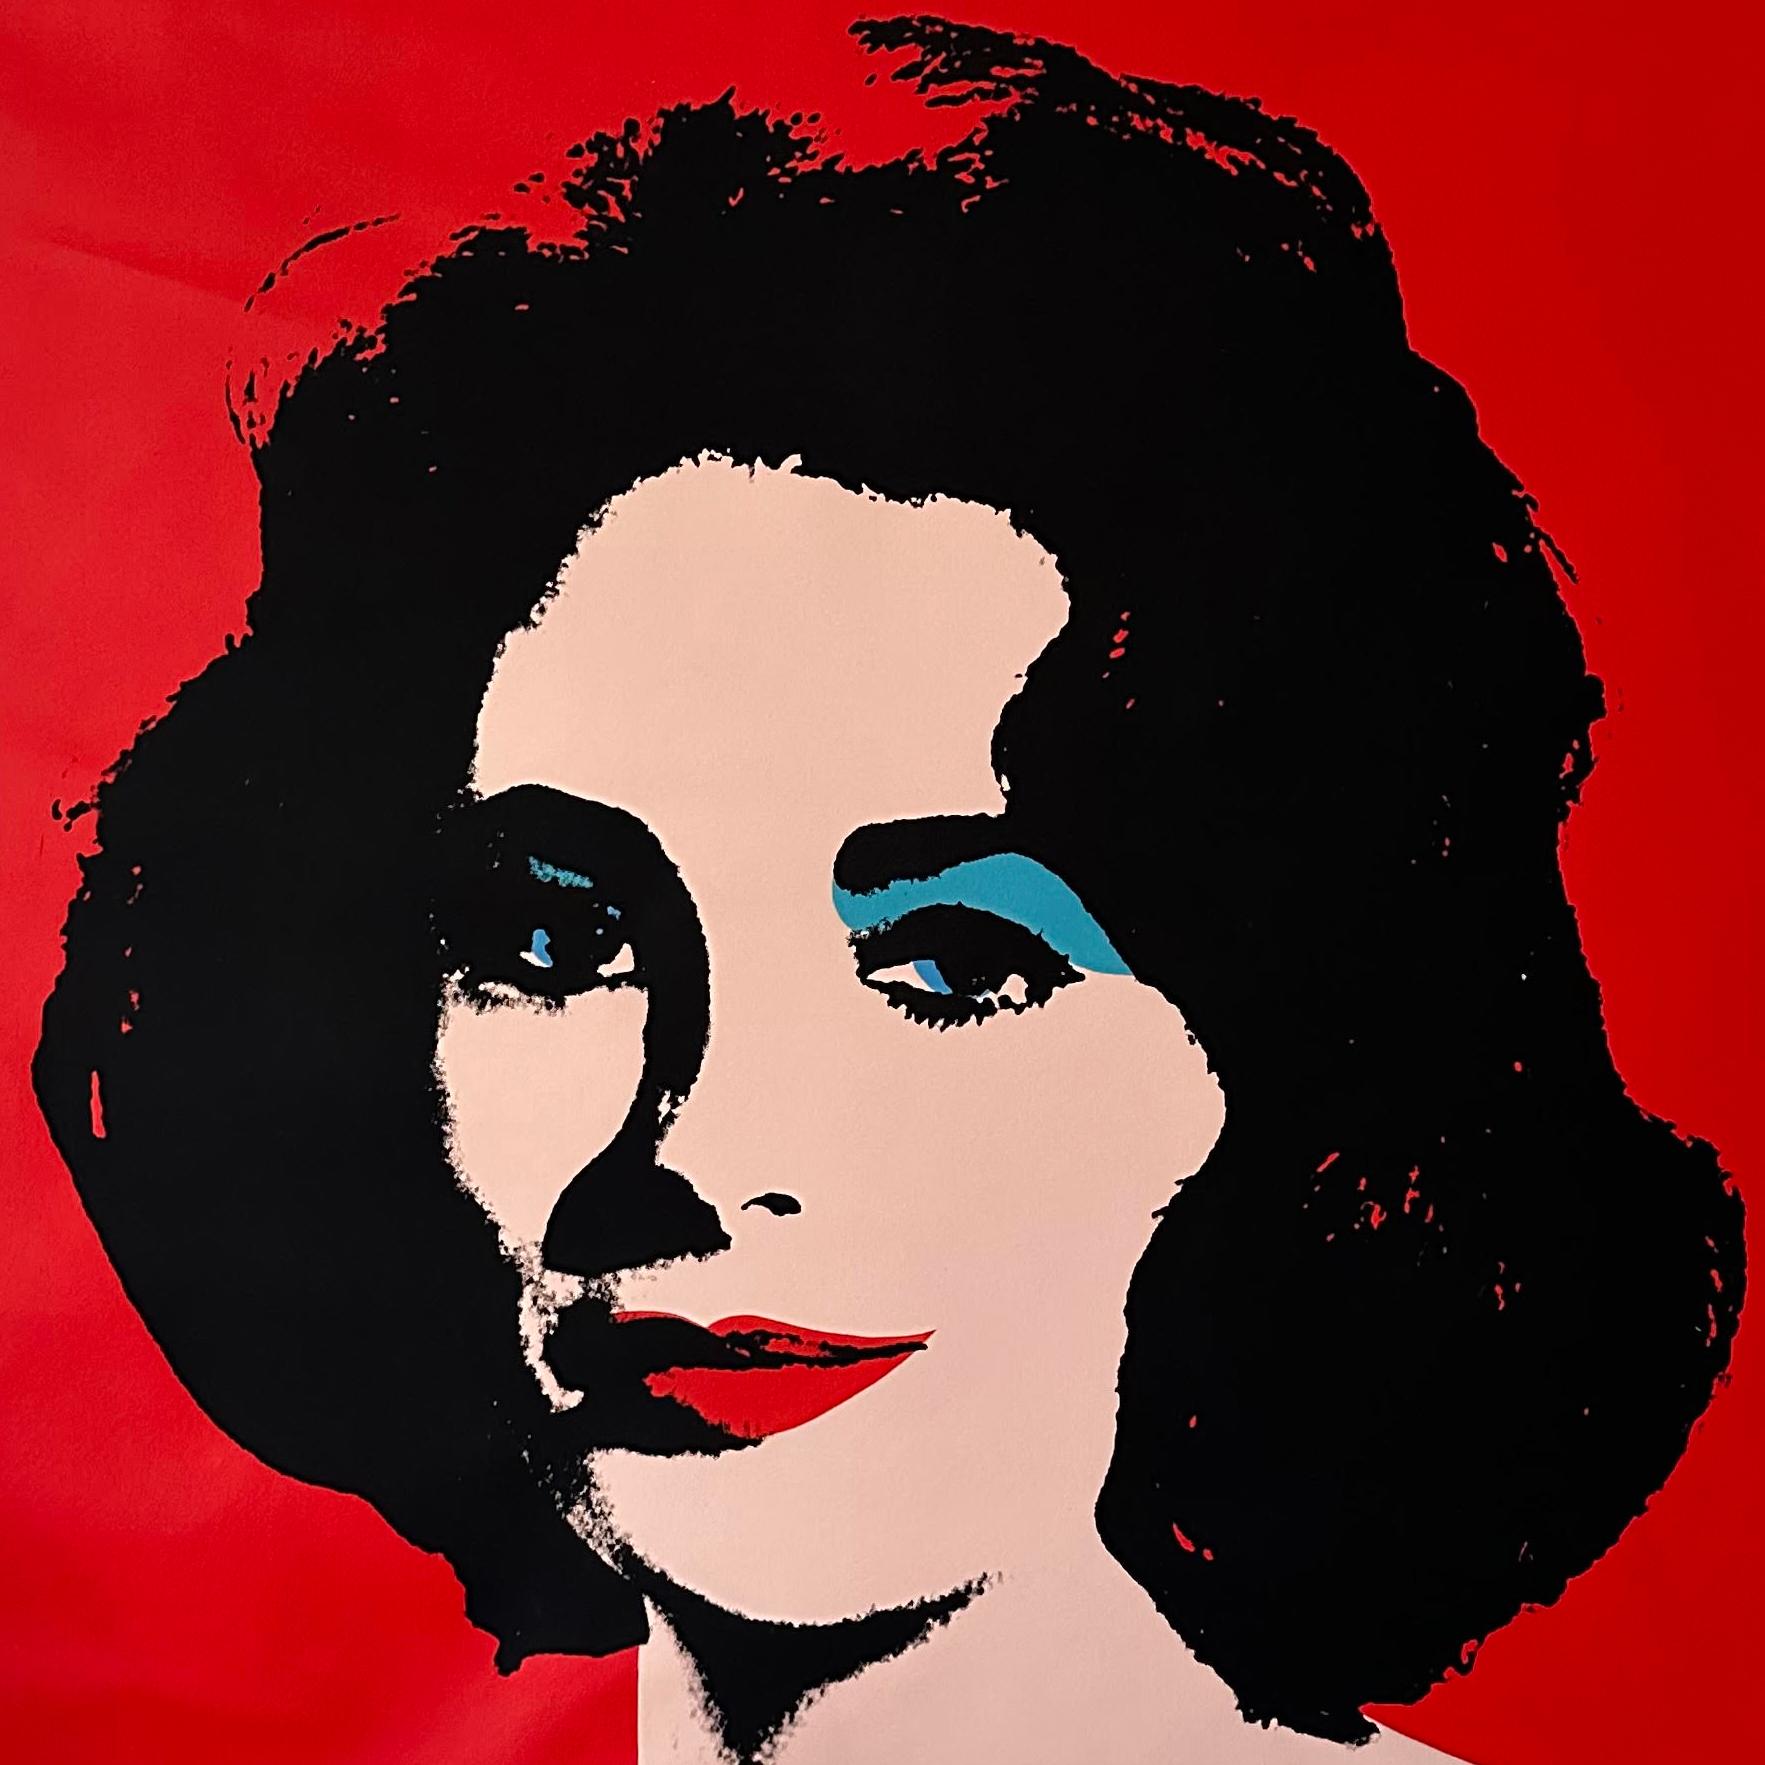 Denied Warhol Red Liz Peinture sur toile de Charles Lutz
Sérigraphie et acrylique sur toile avec le cachet Denied de l'artiste du Andy Warhol Art Authentication Board. 
40 x 40" pouces 
2008

En 2007, la série "Warhol Denied" de Gaines a attiré